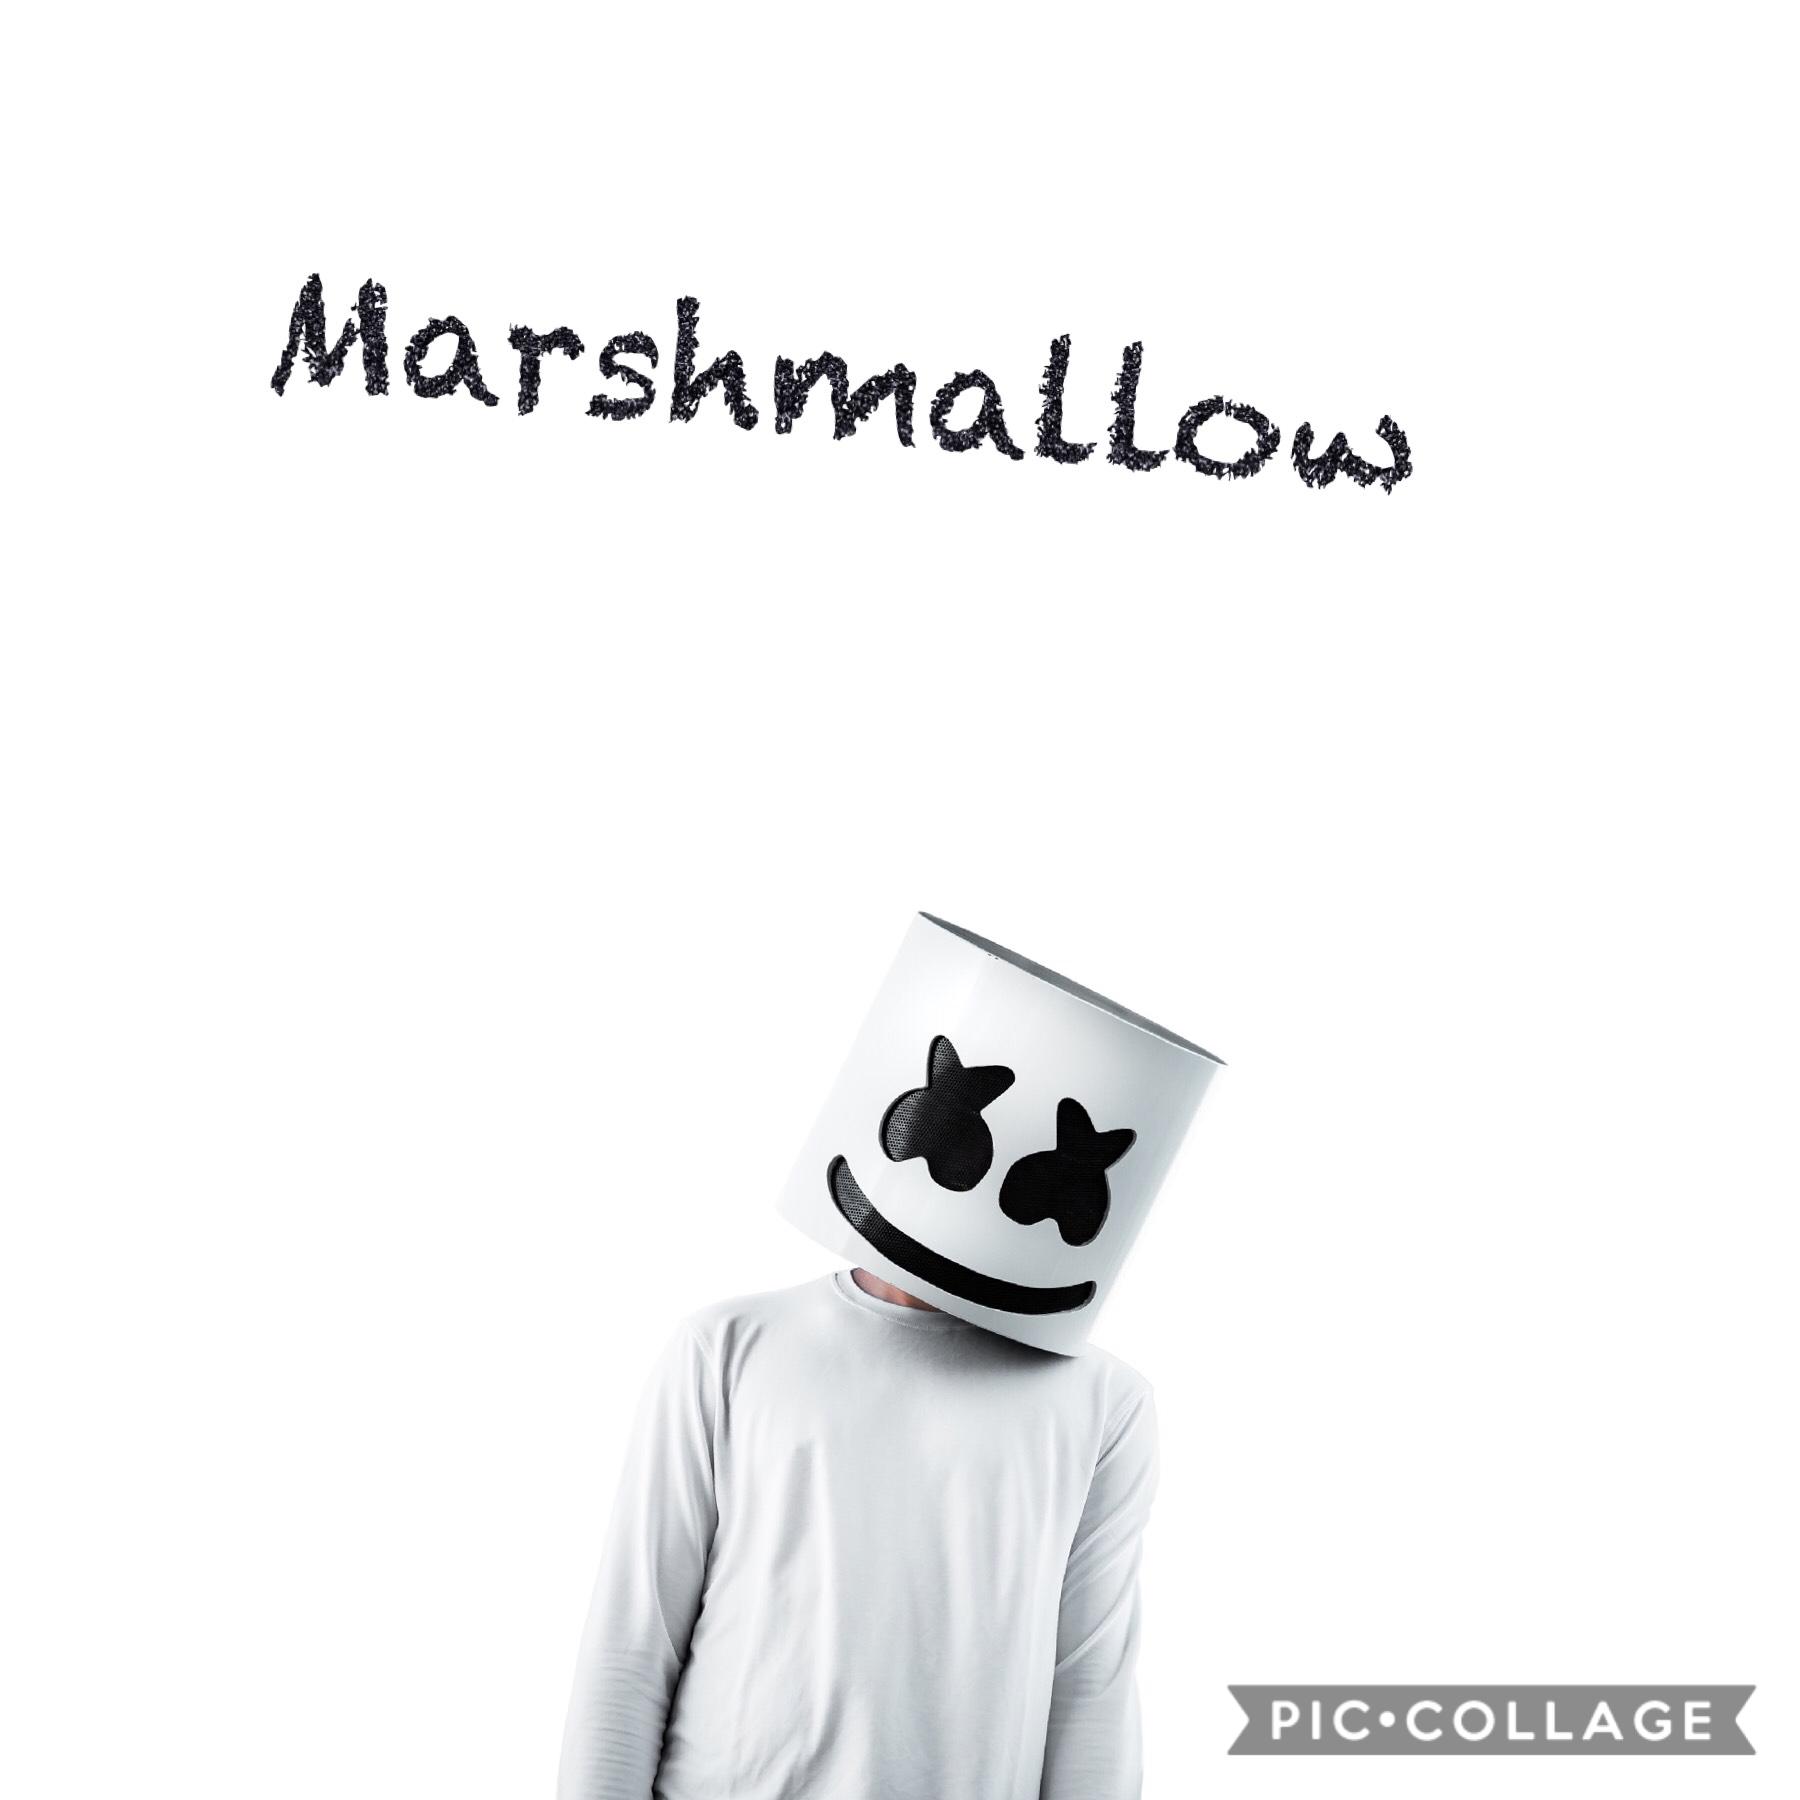 Marshmallow 